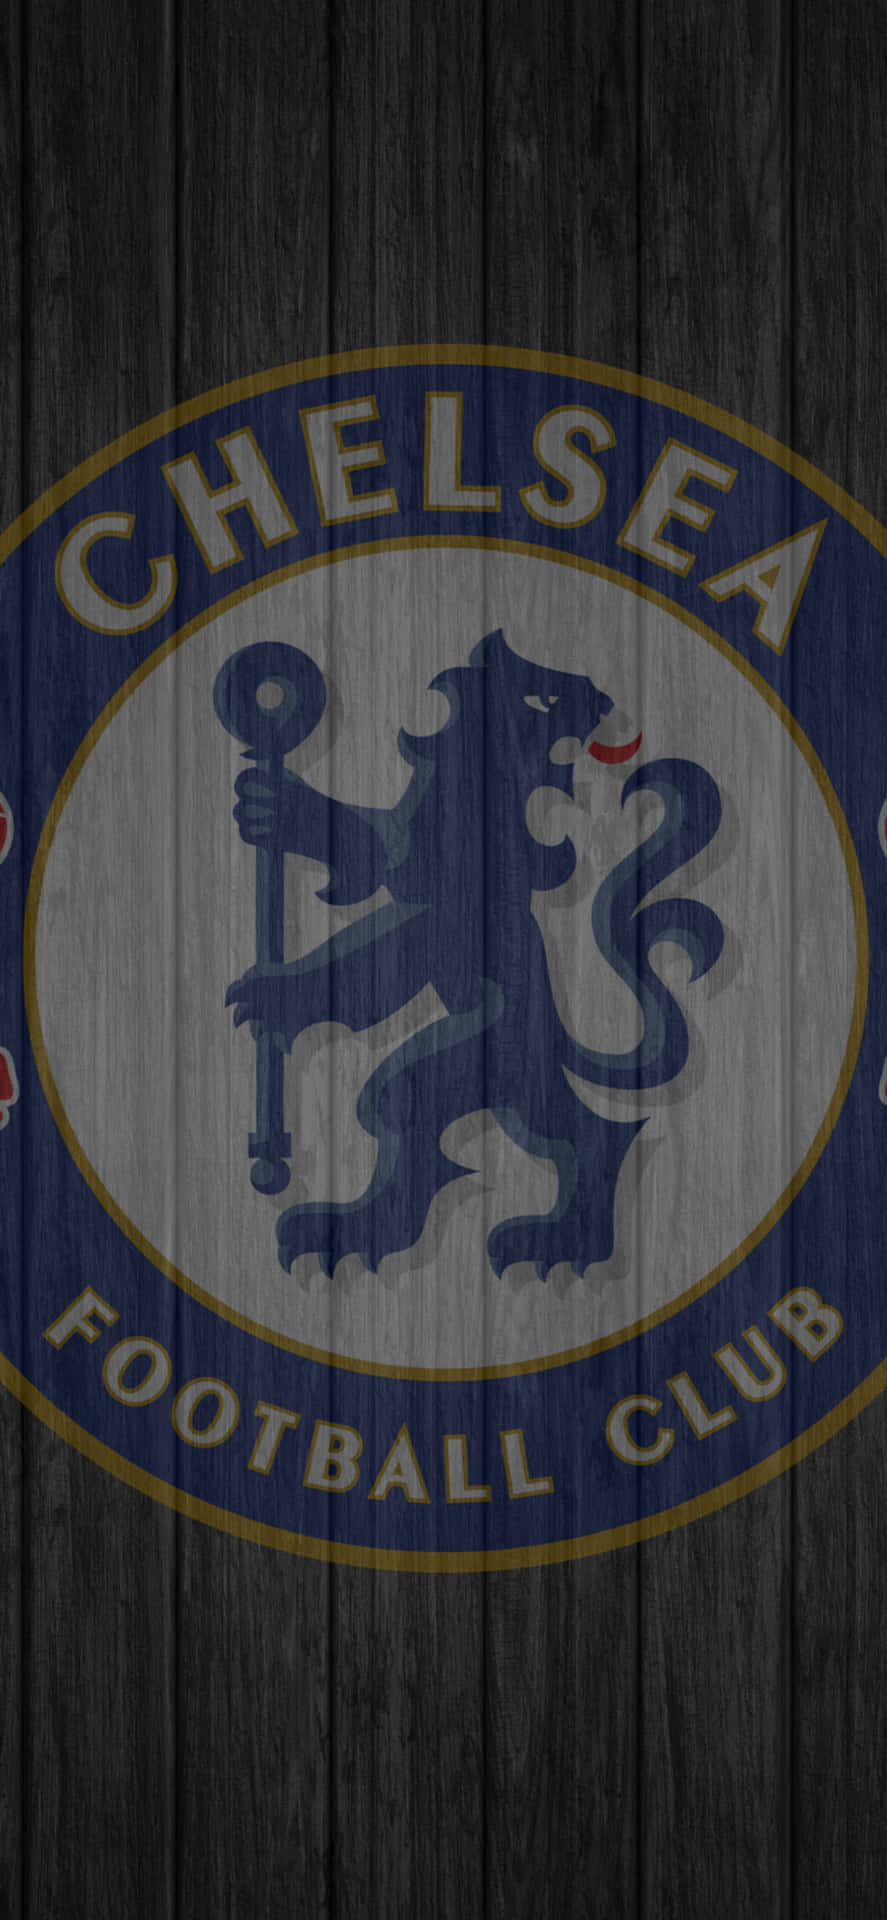 Ricevile Ultime Notizie Sul Chelsea Football Club Con Il Wallpaper Per Iphone Del Chelsea. Sfondo